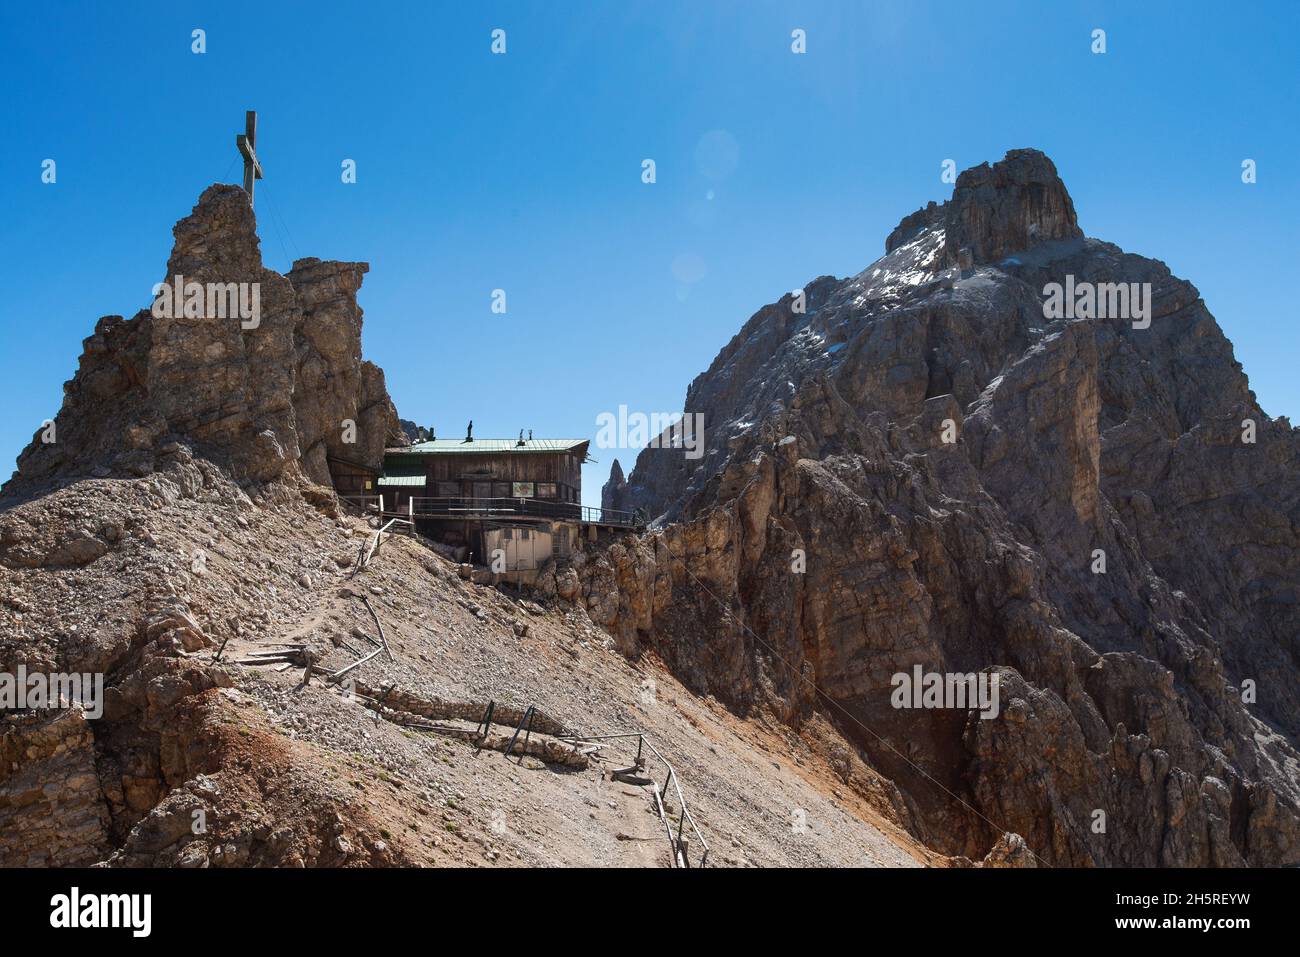 Lorenzi refuge in the Dolomites mountains, Italy Stock Photo